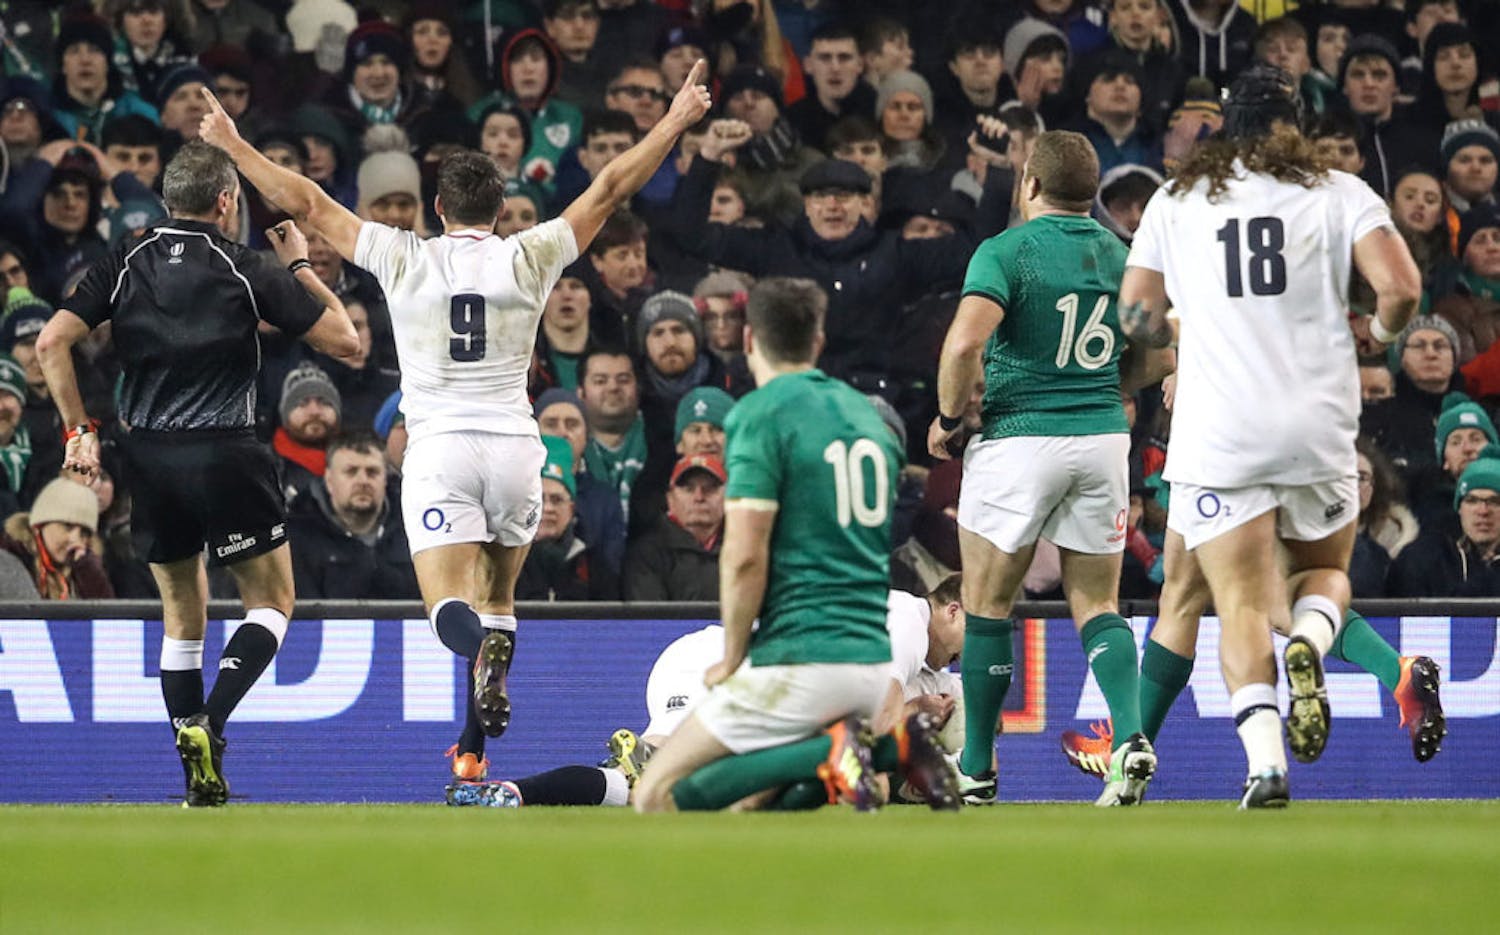 OTB AM | Ireland crushed, flat Super Bowl, Mayo on song